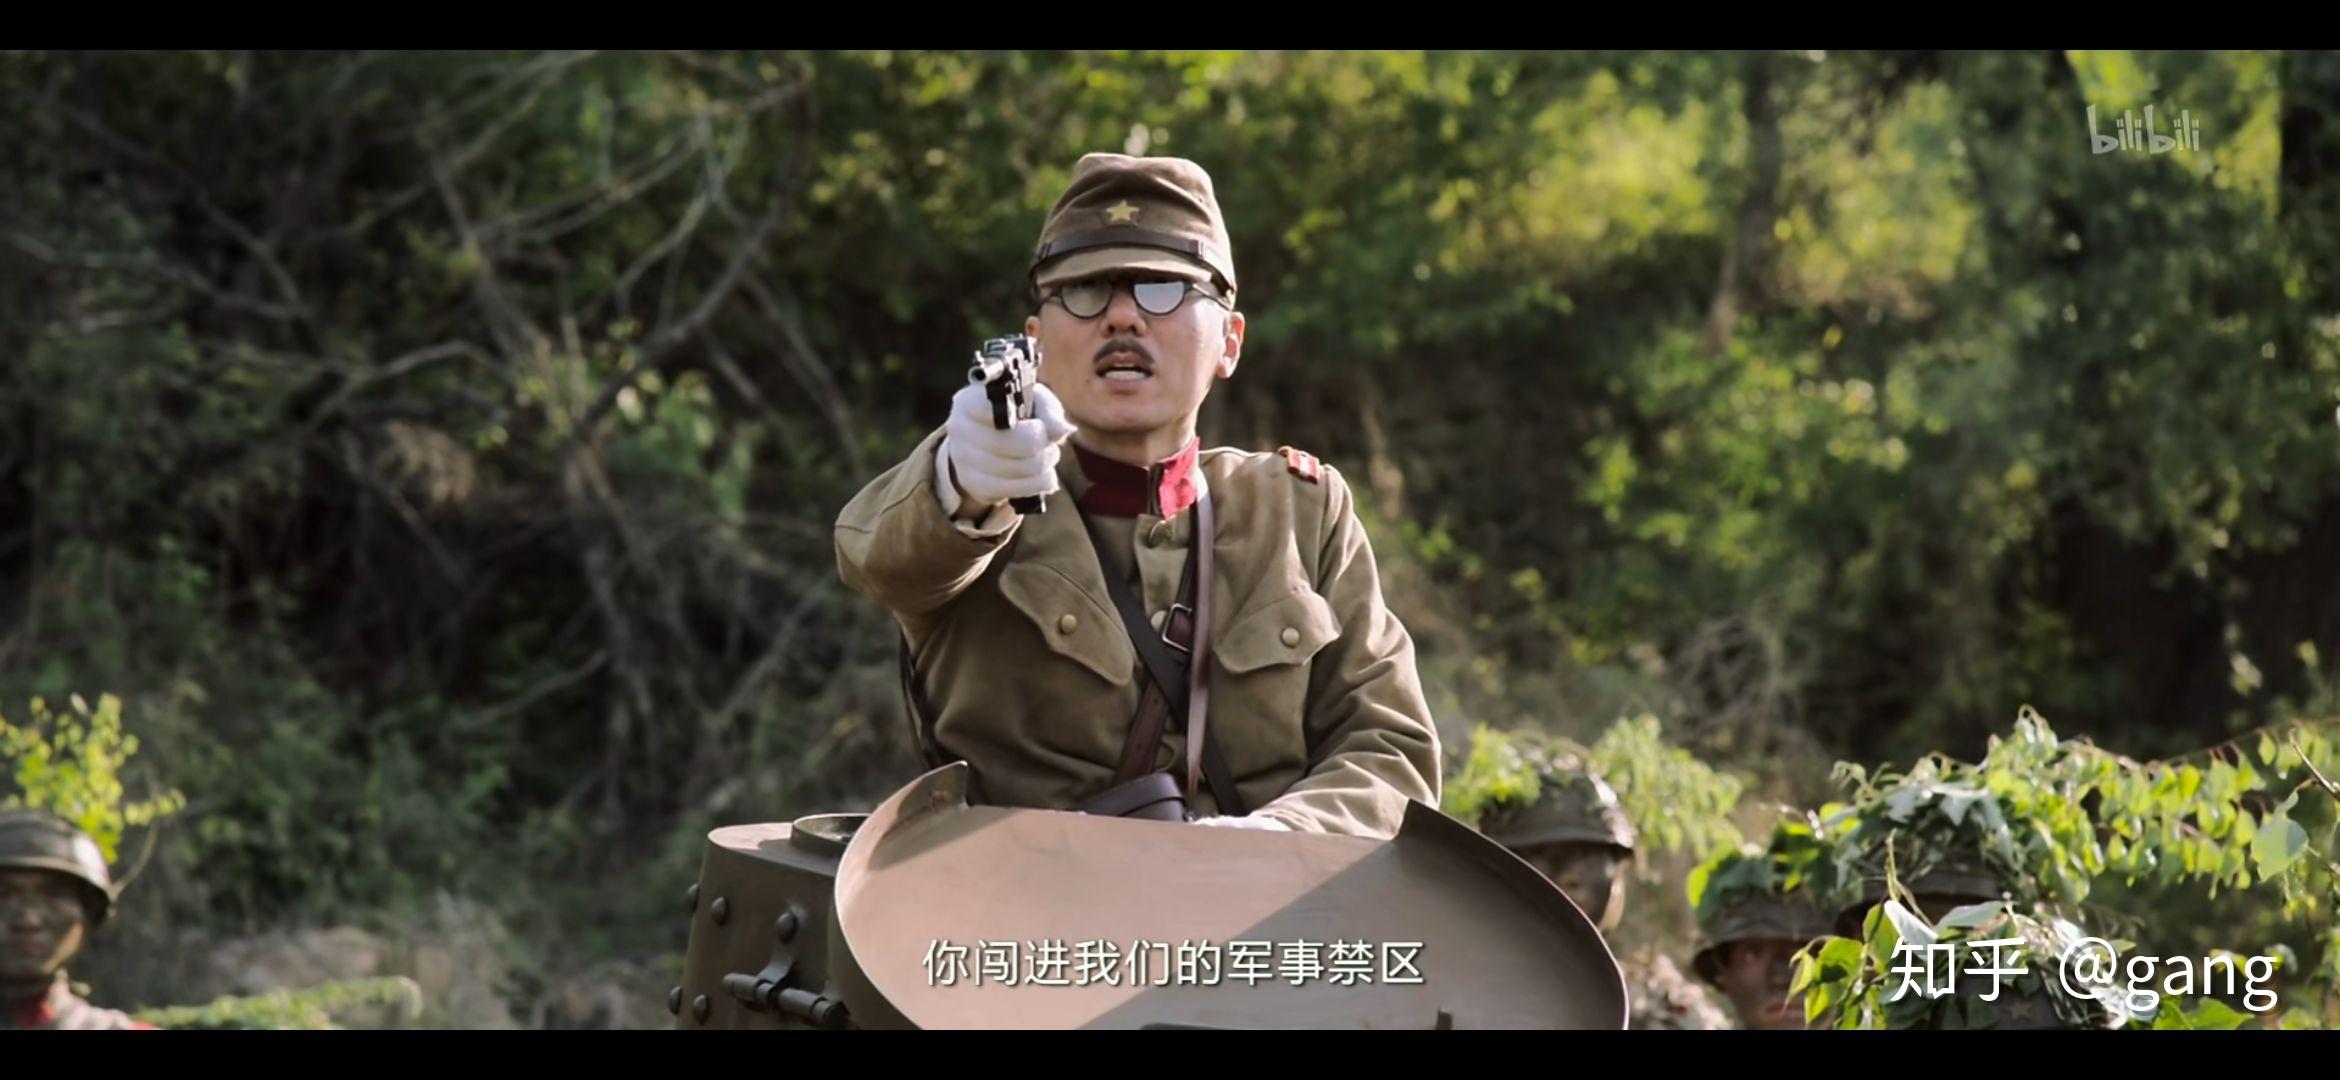 哪一部影视剧中的鬼子角色最符合抗战中真实的日军形象